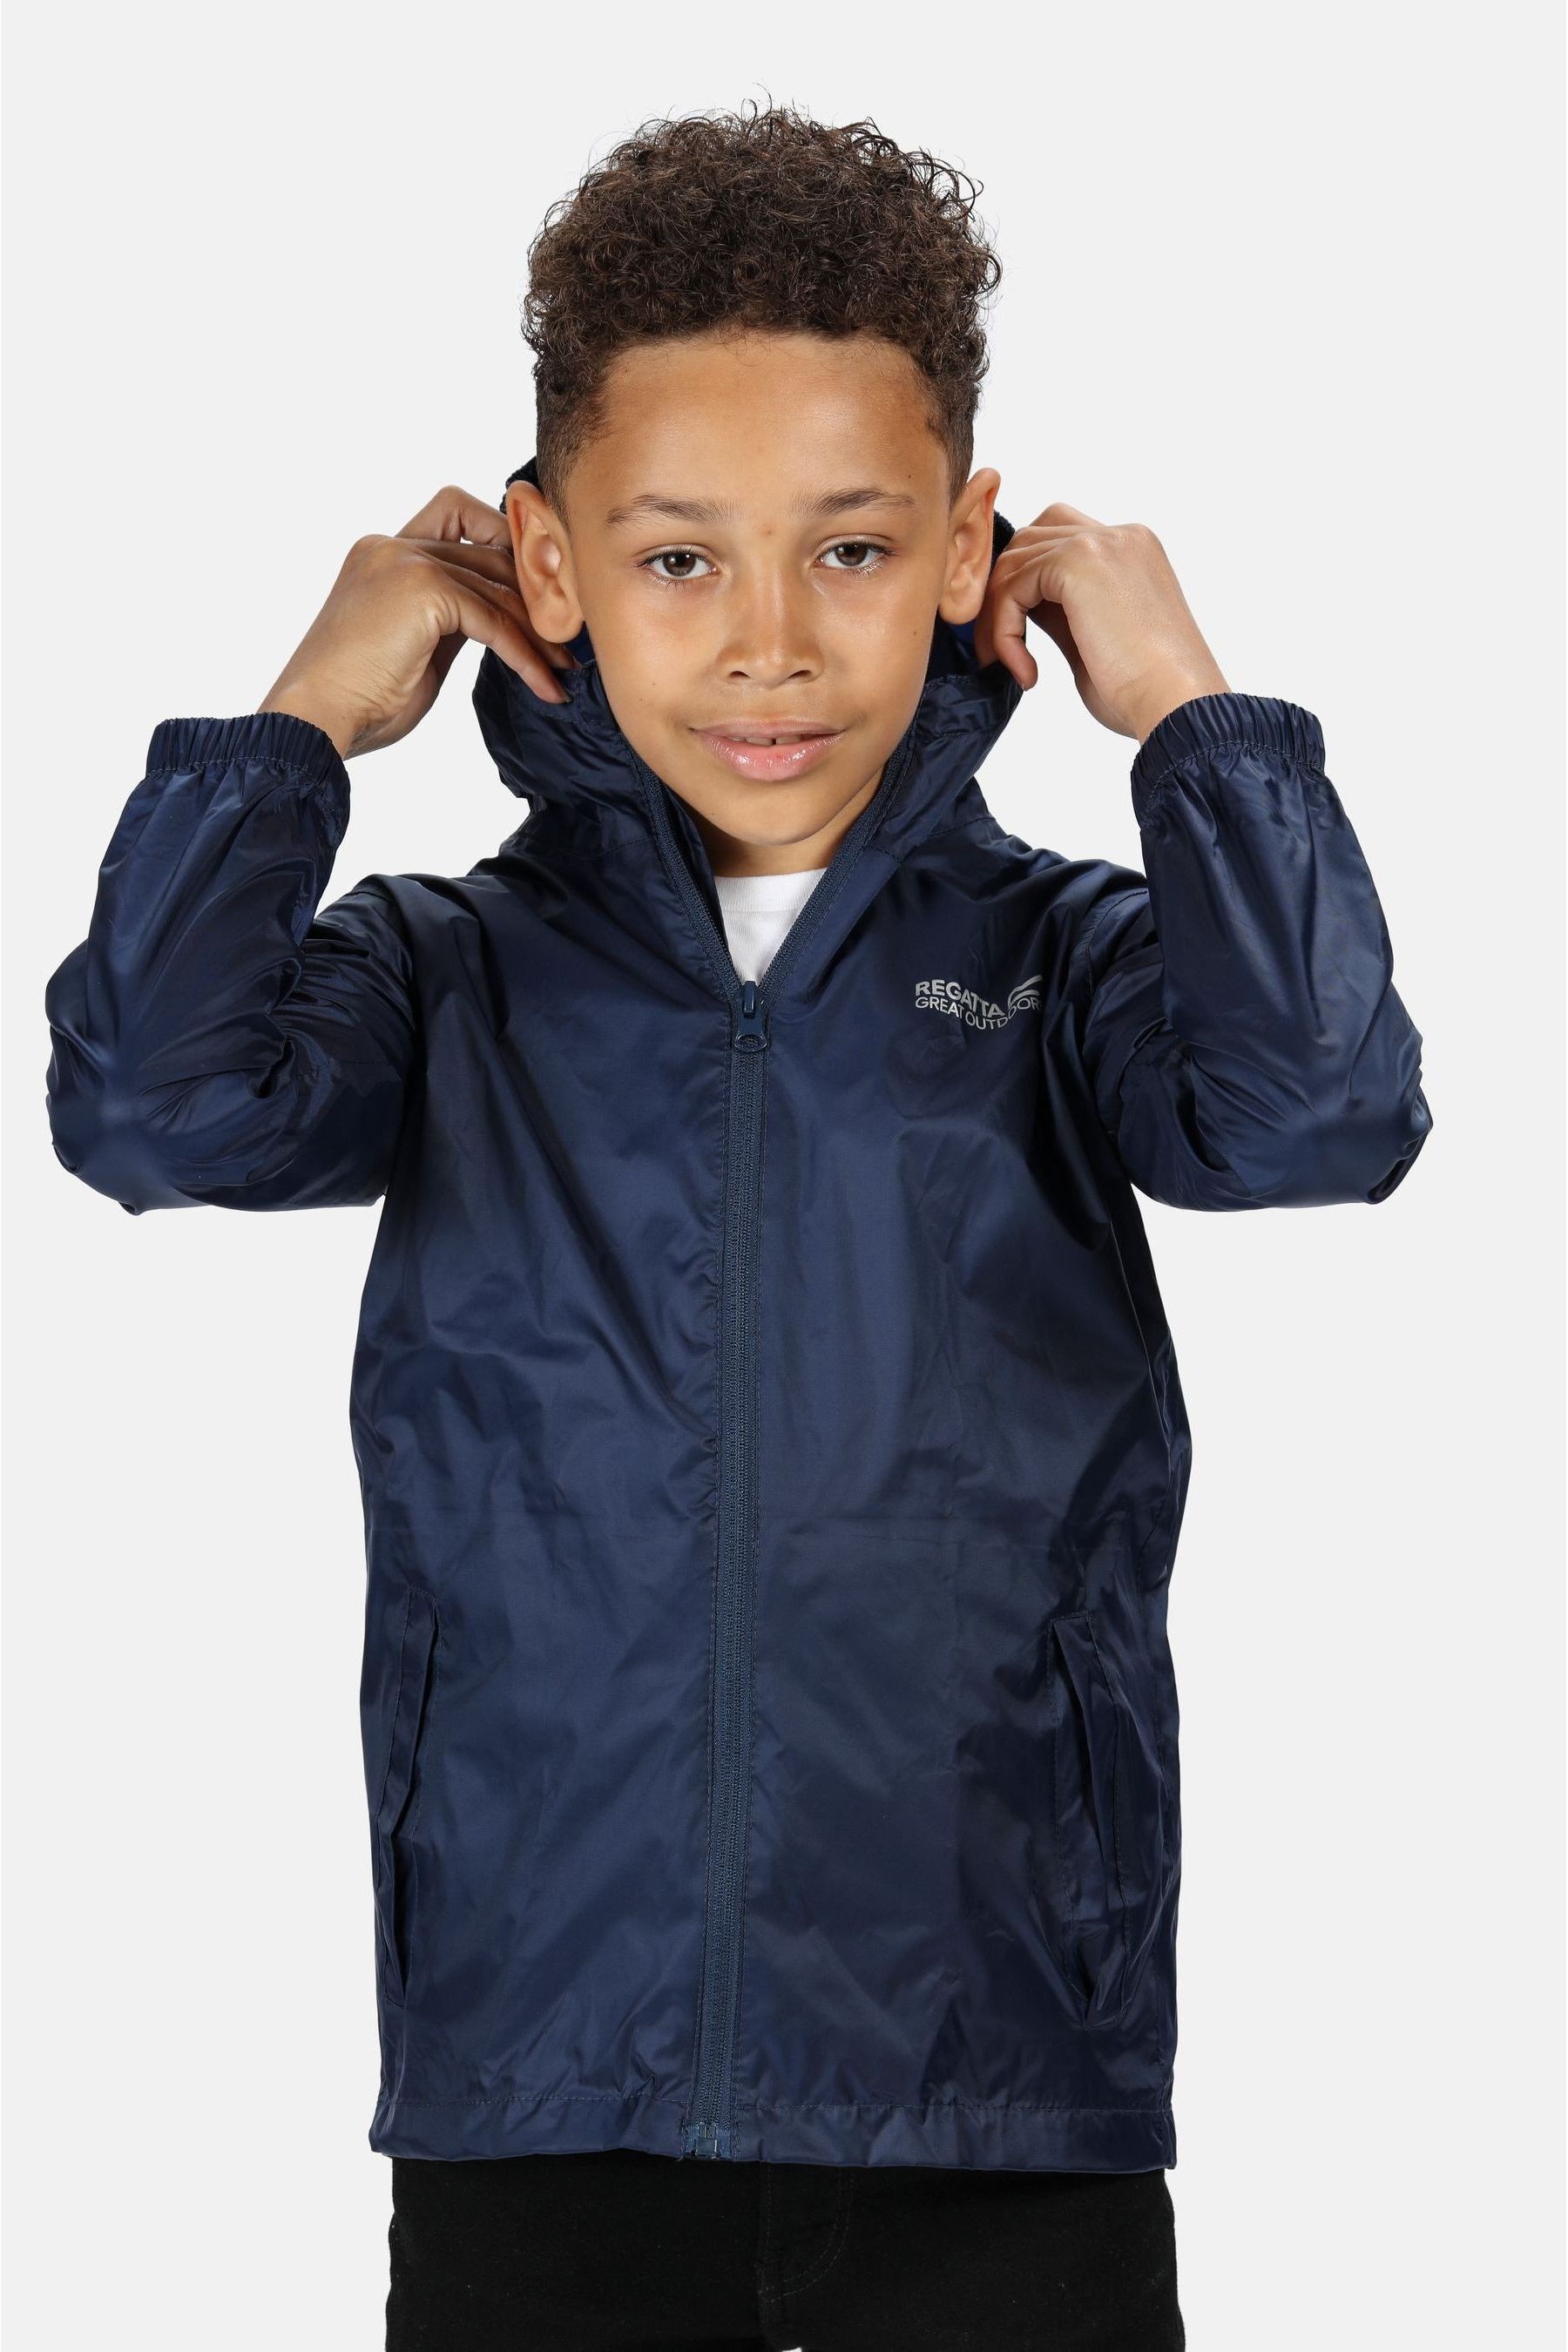 Regatta Kids Stormbreak Waterproof Puddle Jacket